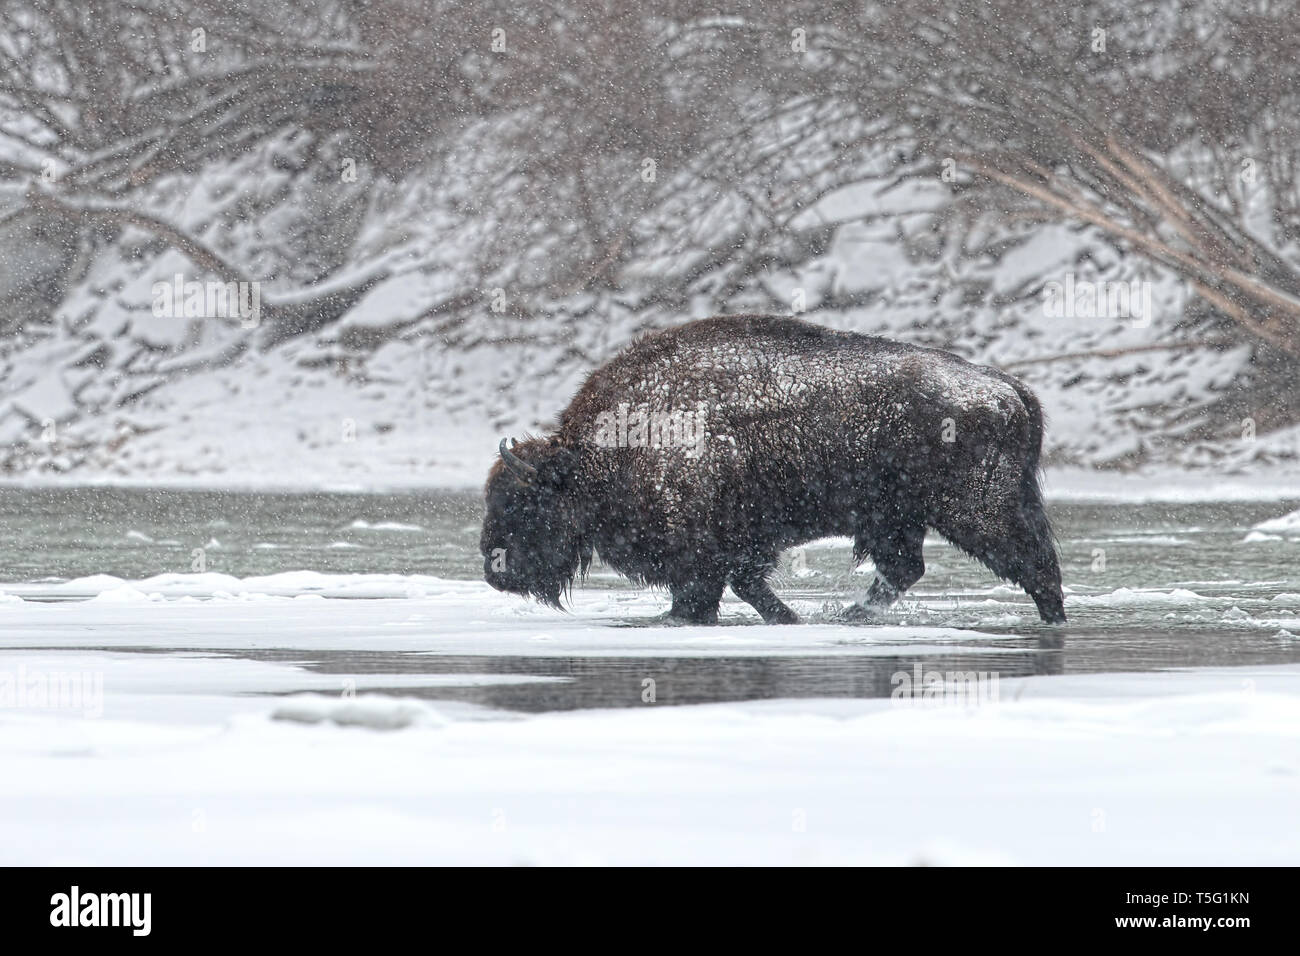 Homme sauvage, le bison d'Europe Bison bonasus crossing river en hiver avec la neige qui tombe autour. Banque D'Images